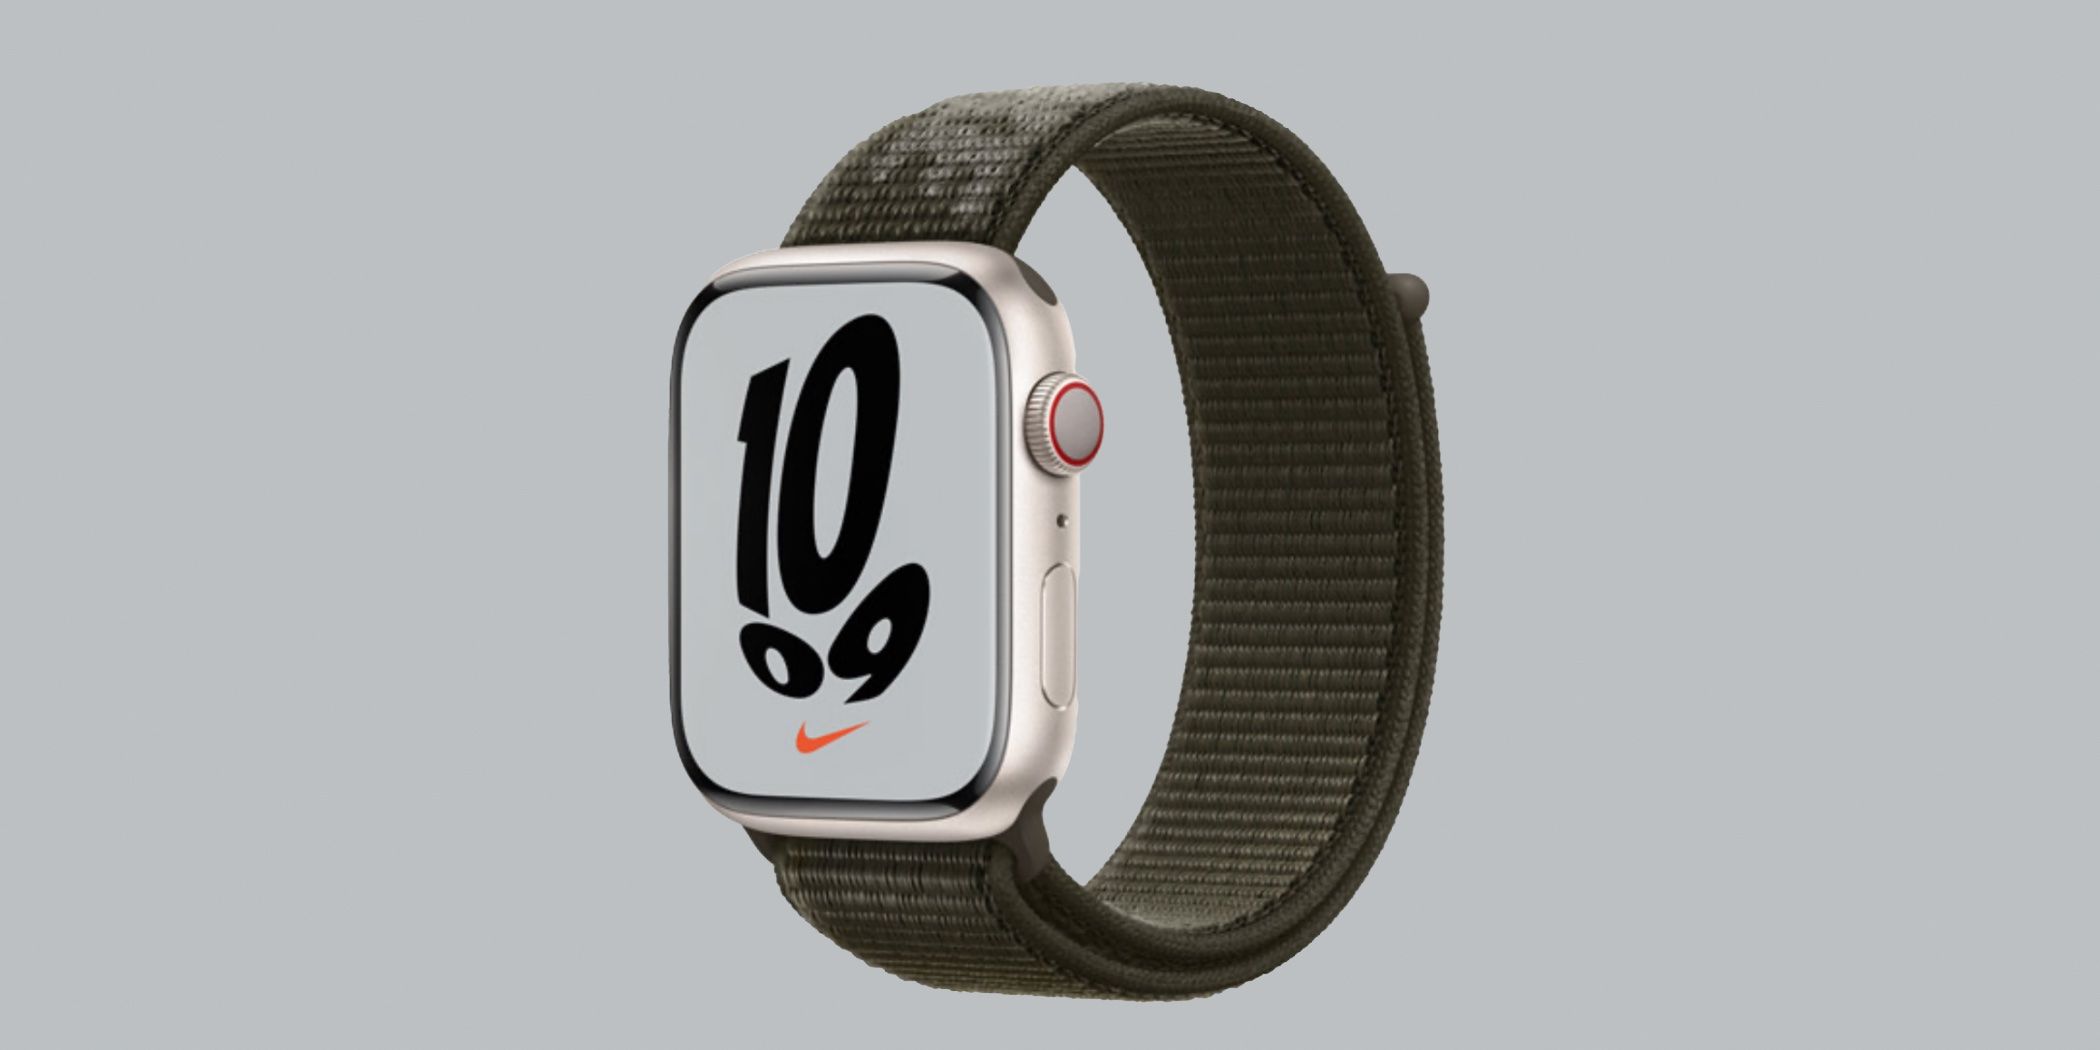 A edição especial do Apple Watch da Nike.